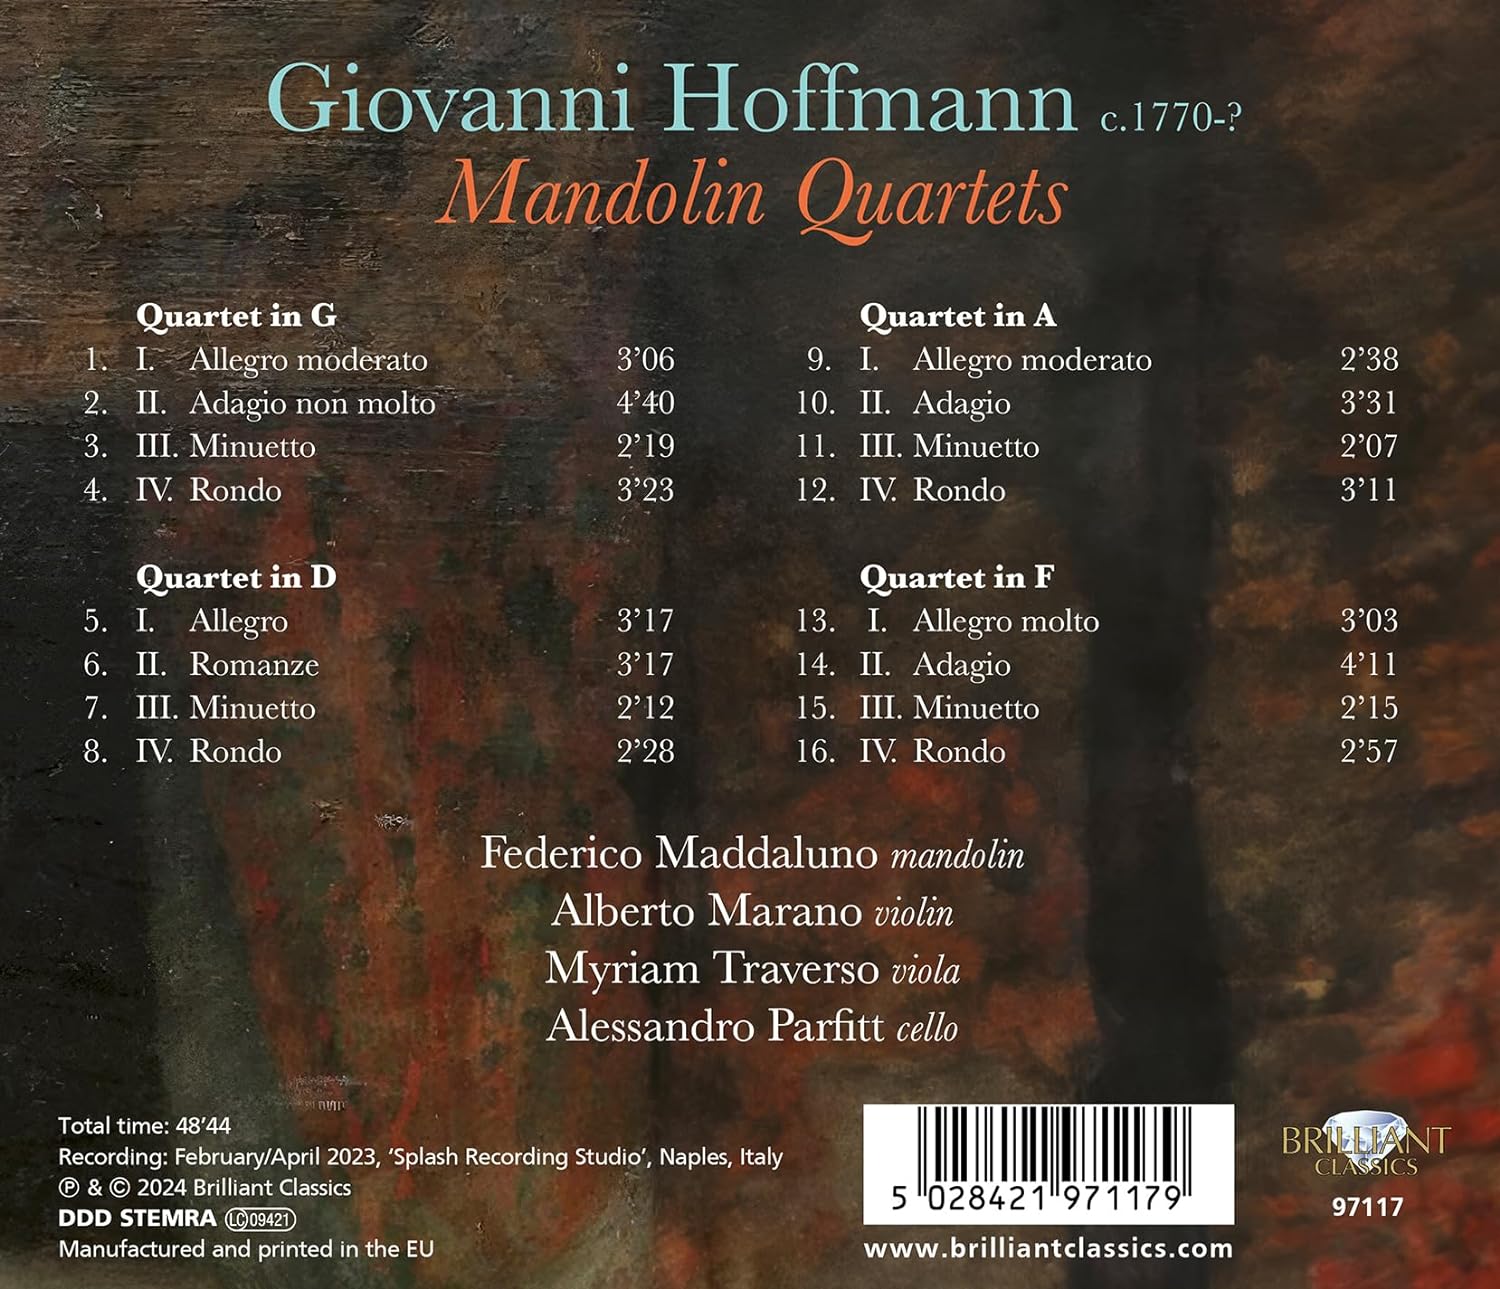 호프만: 만돌린 4중주 (Hoffmann: Mandolin Quartets)